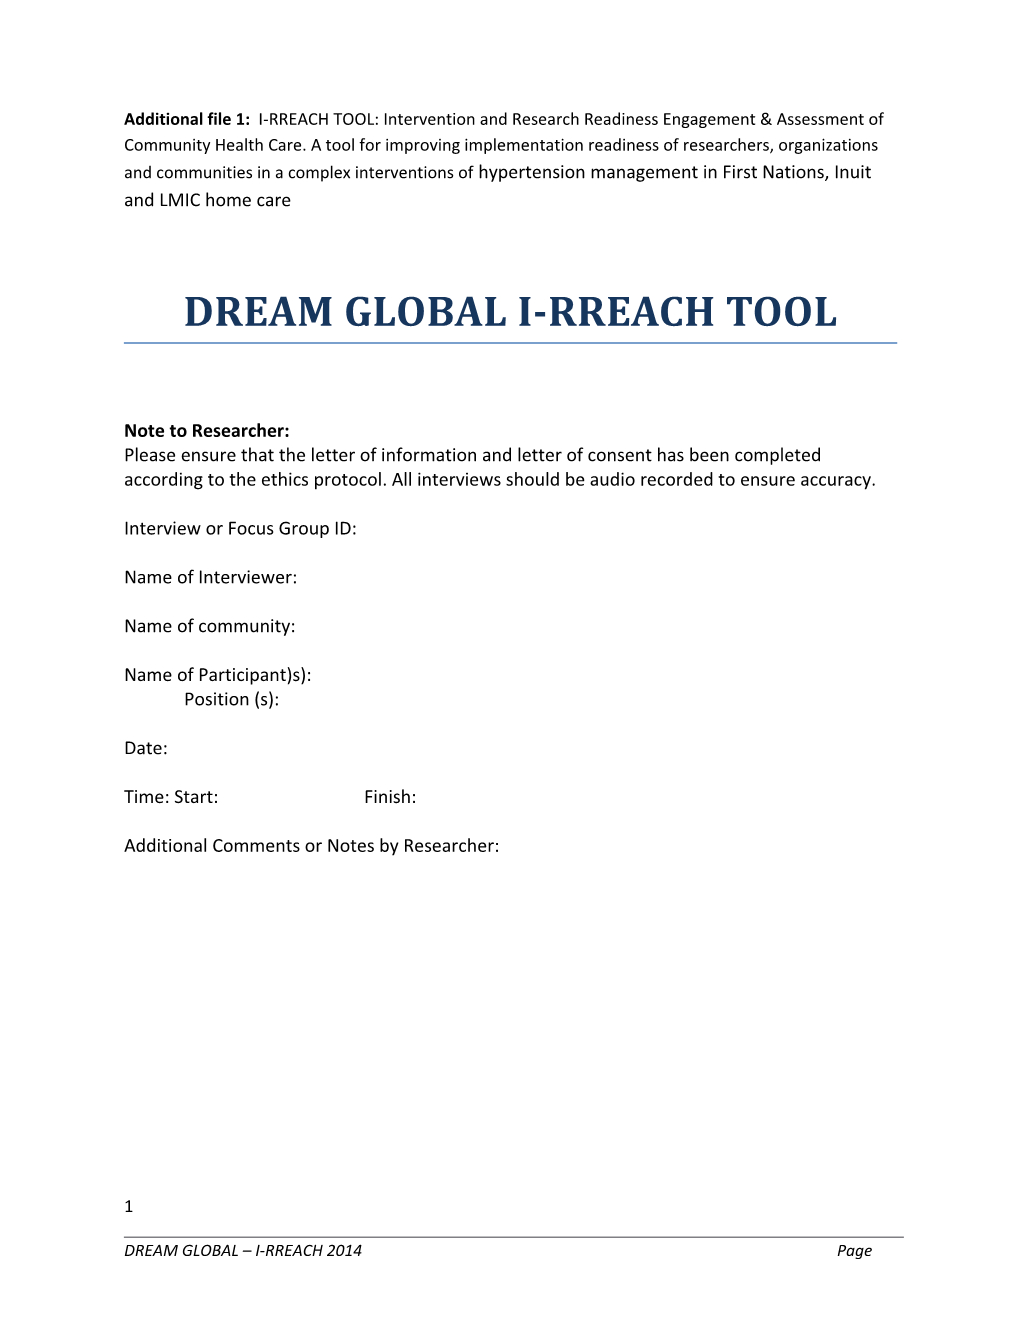 Dream Global I-Rreach Tool